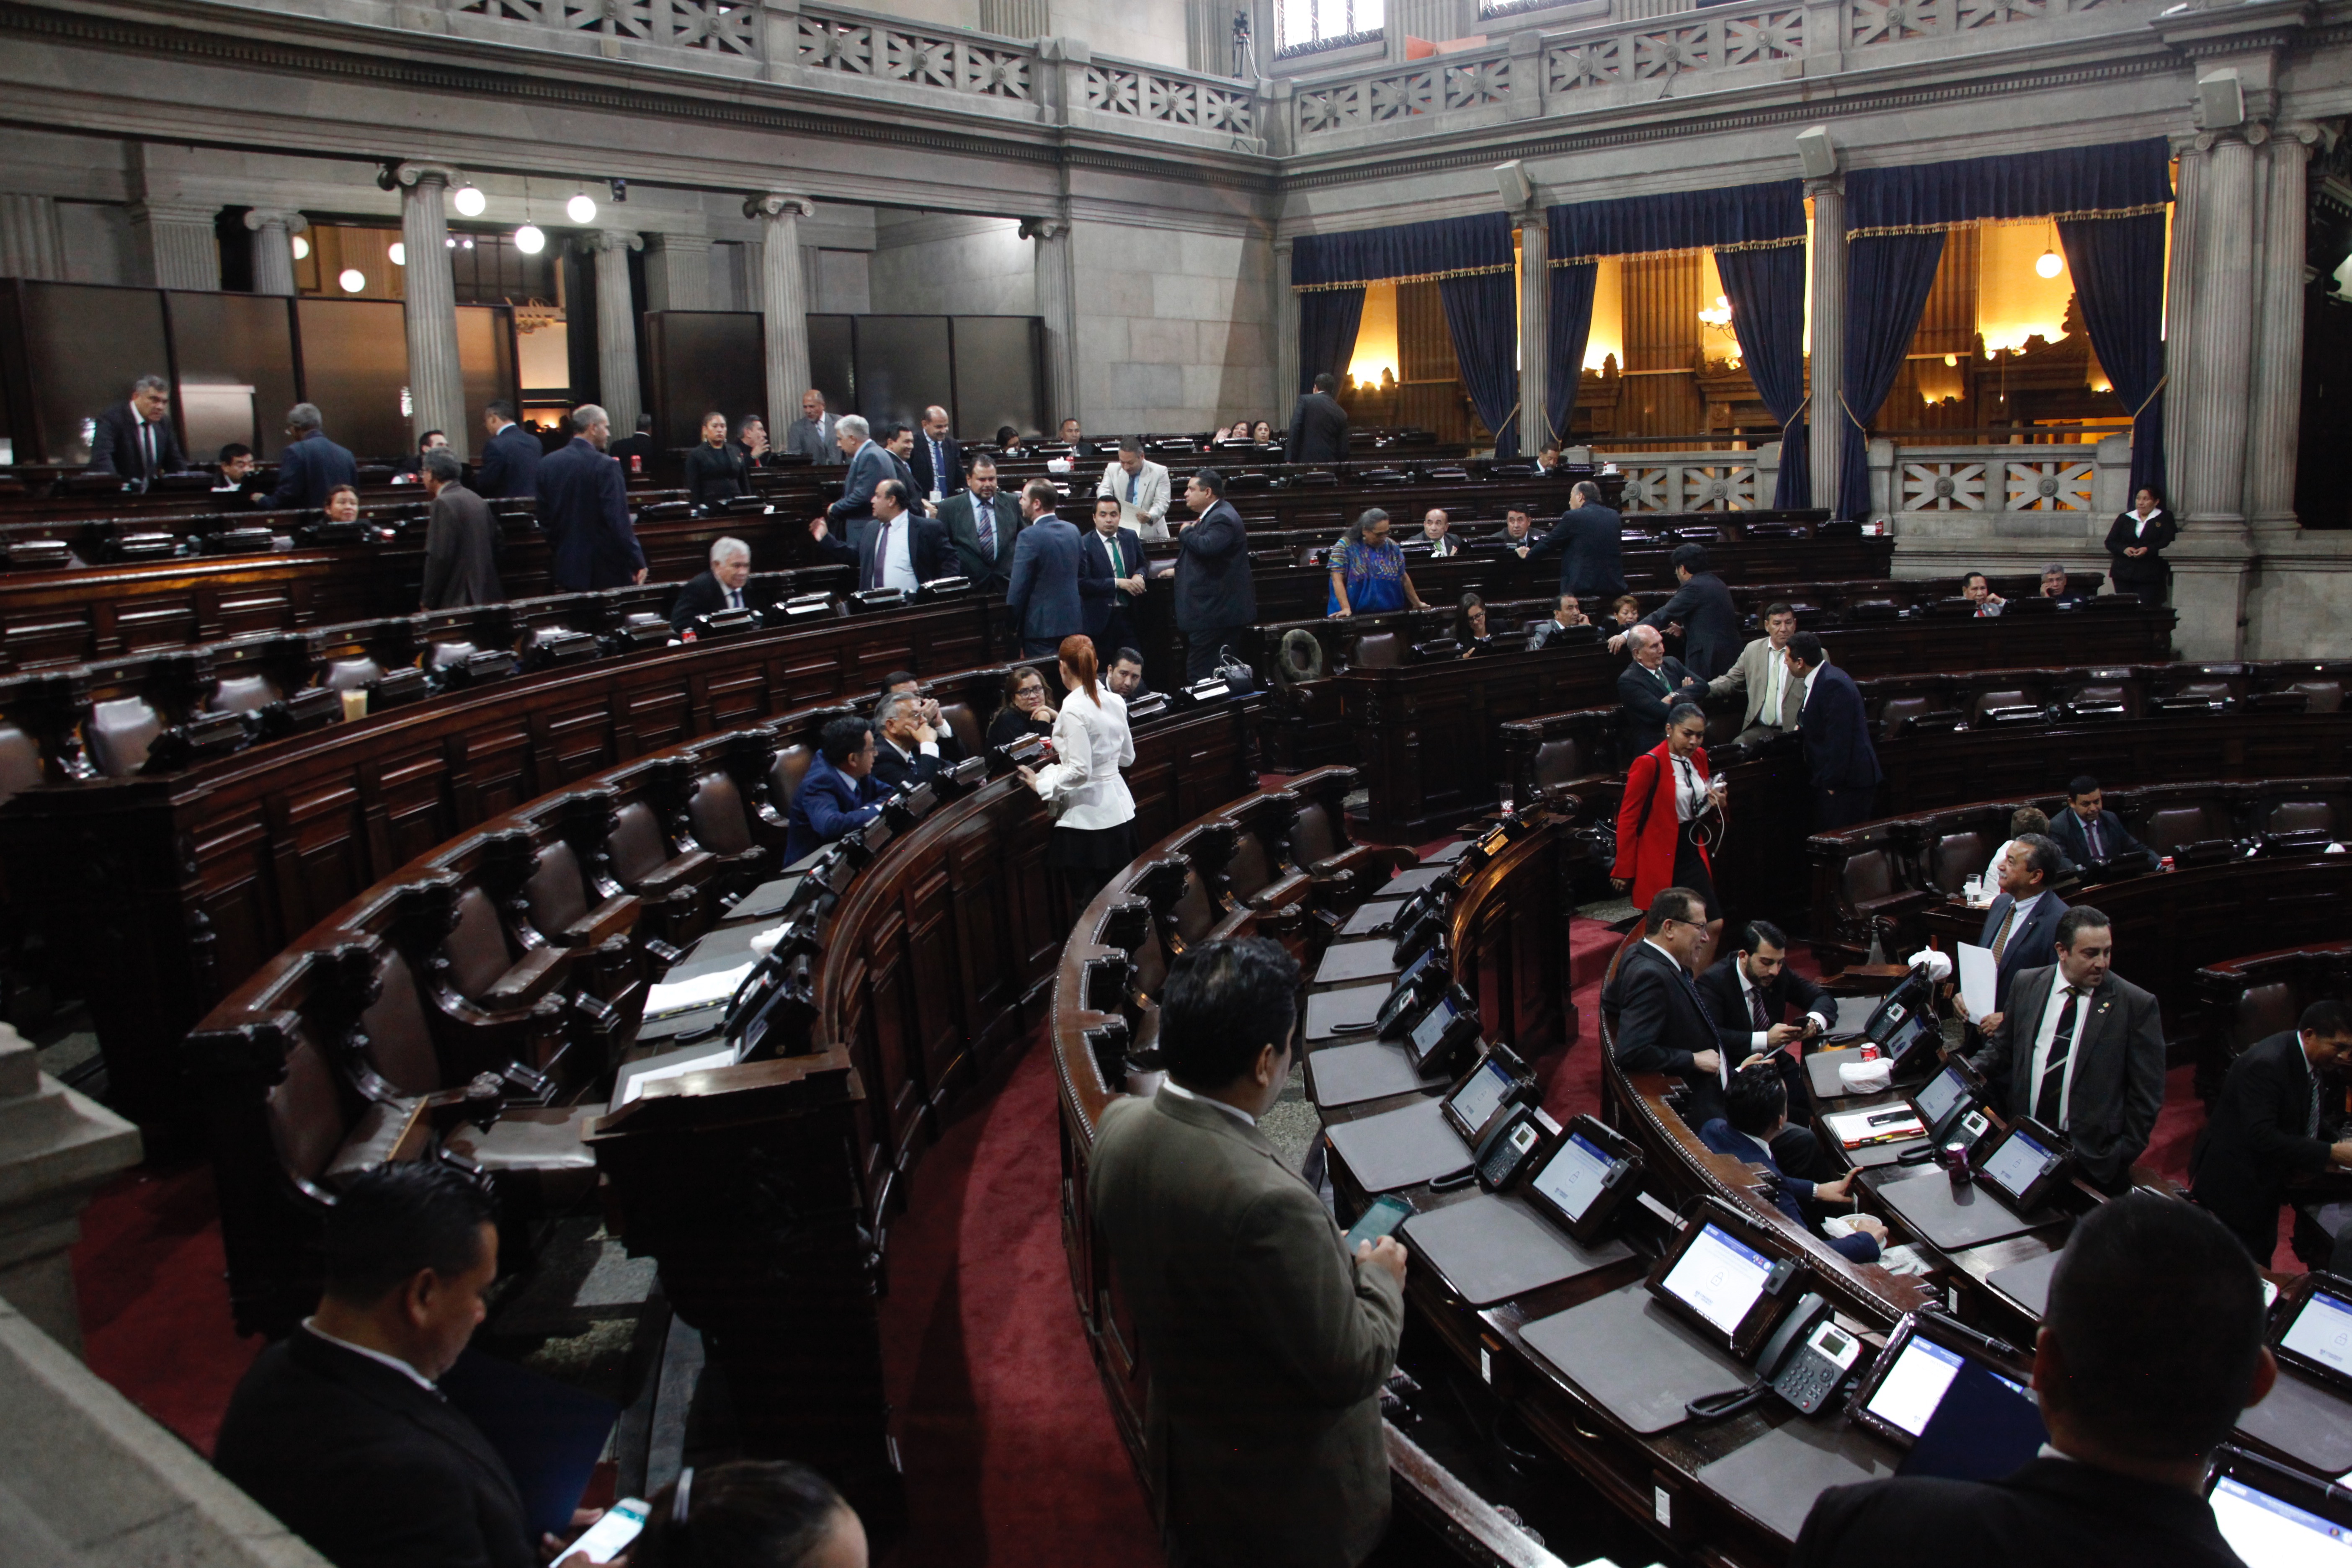 Congreso de la Republica durante la aprobación del Estado de Sitio en 22 municipios. (Foto Prensa Libre: Njoe Medina)
Noe Medina)